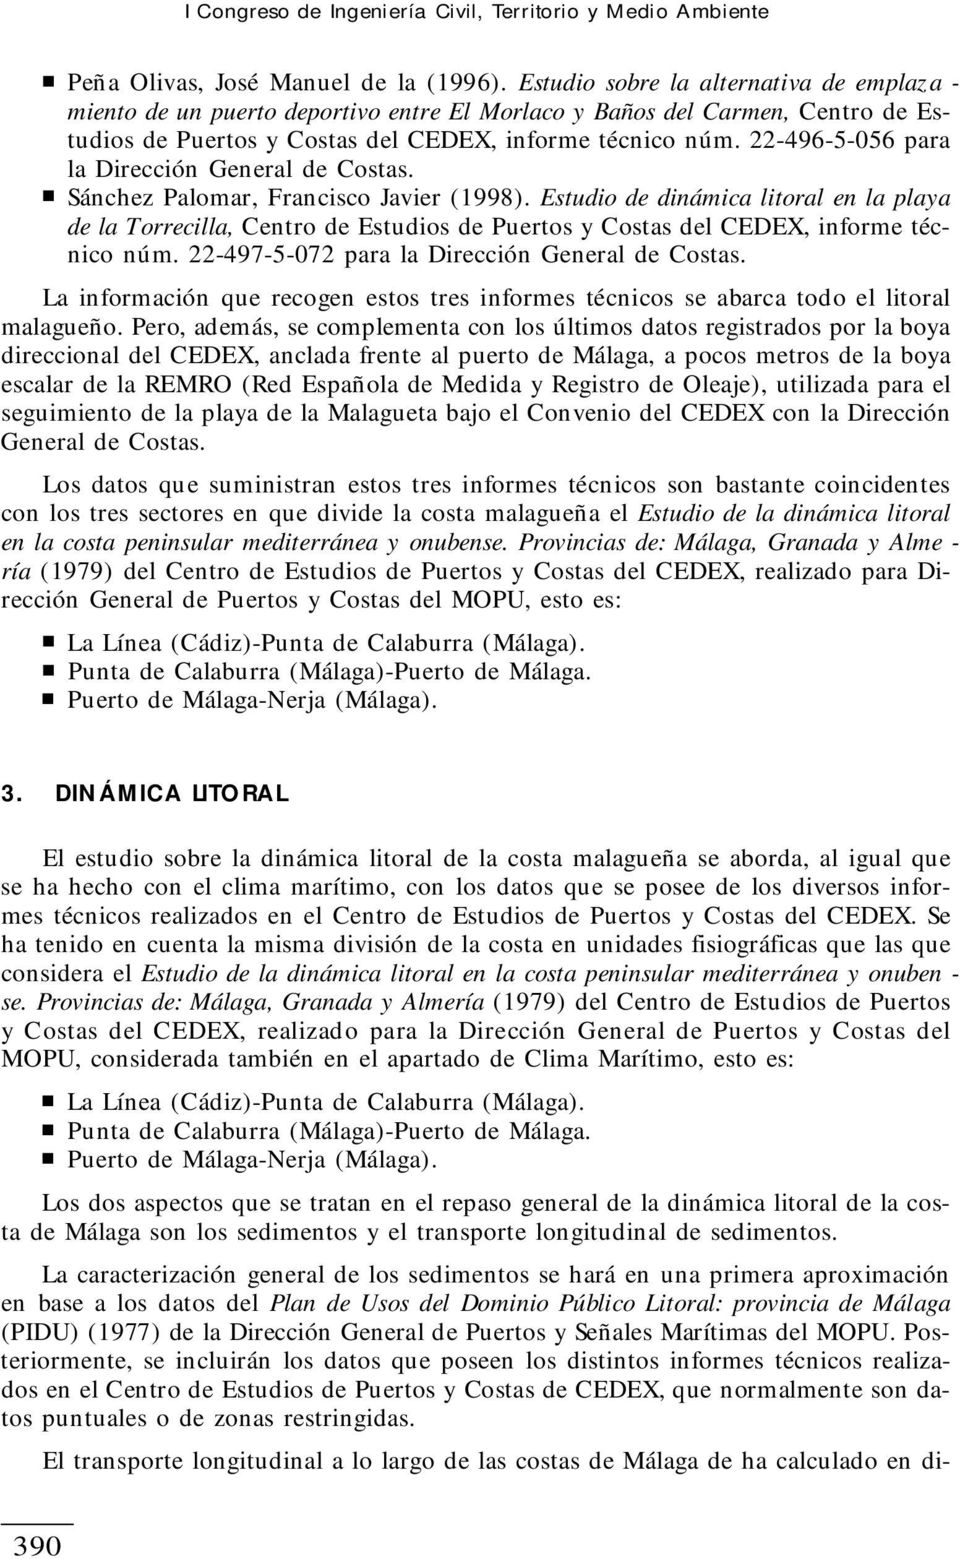 22-496-5-056 para la Dirección General de Costas. Sánchez Palomar, Francisco Javier (1998).